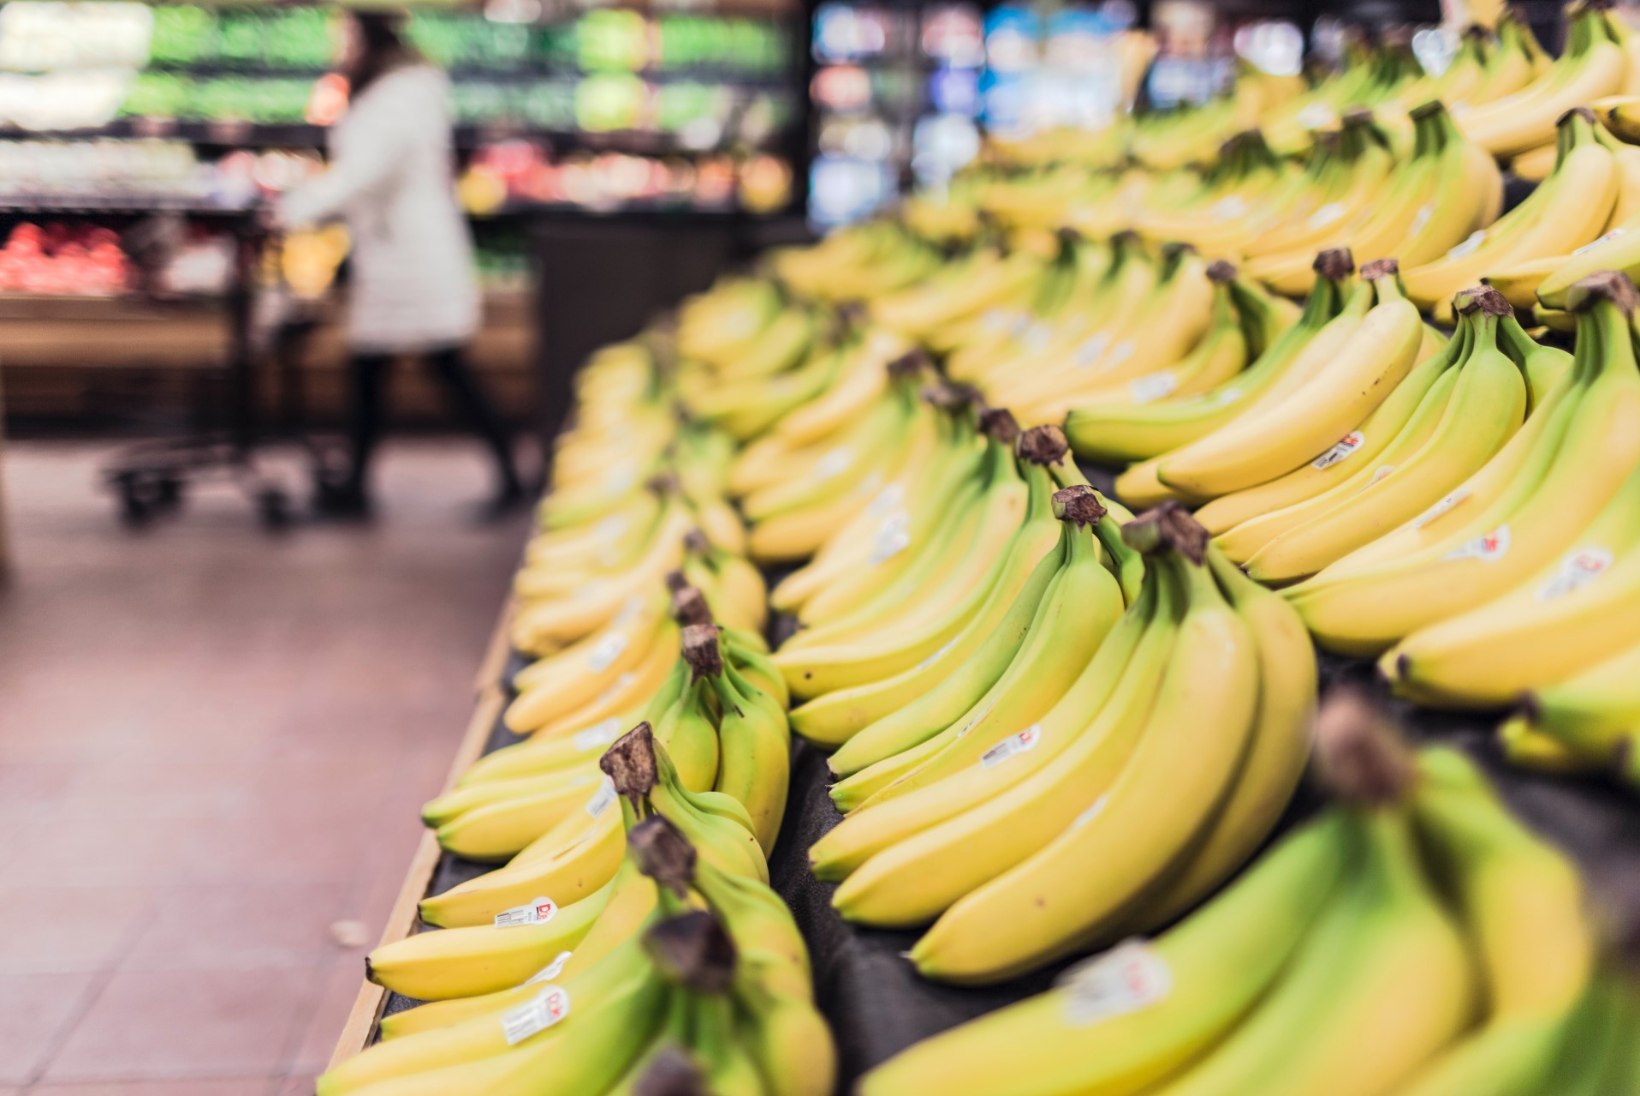 ÕIGLASE KAUBANDUSE USKU: eestlased ostavad poole rohkem Fairtrade’i märgisega tooteid kui varem